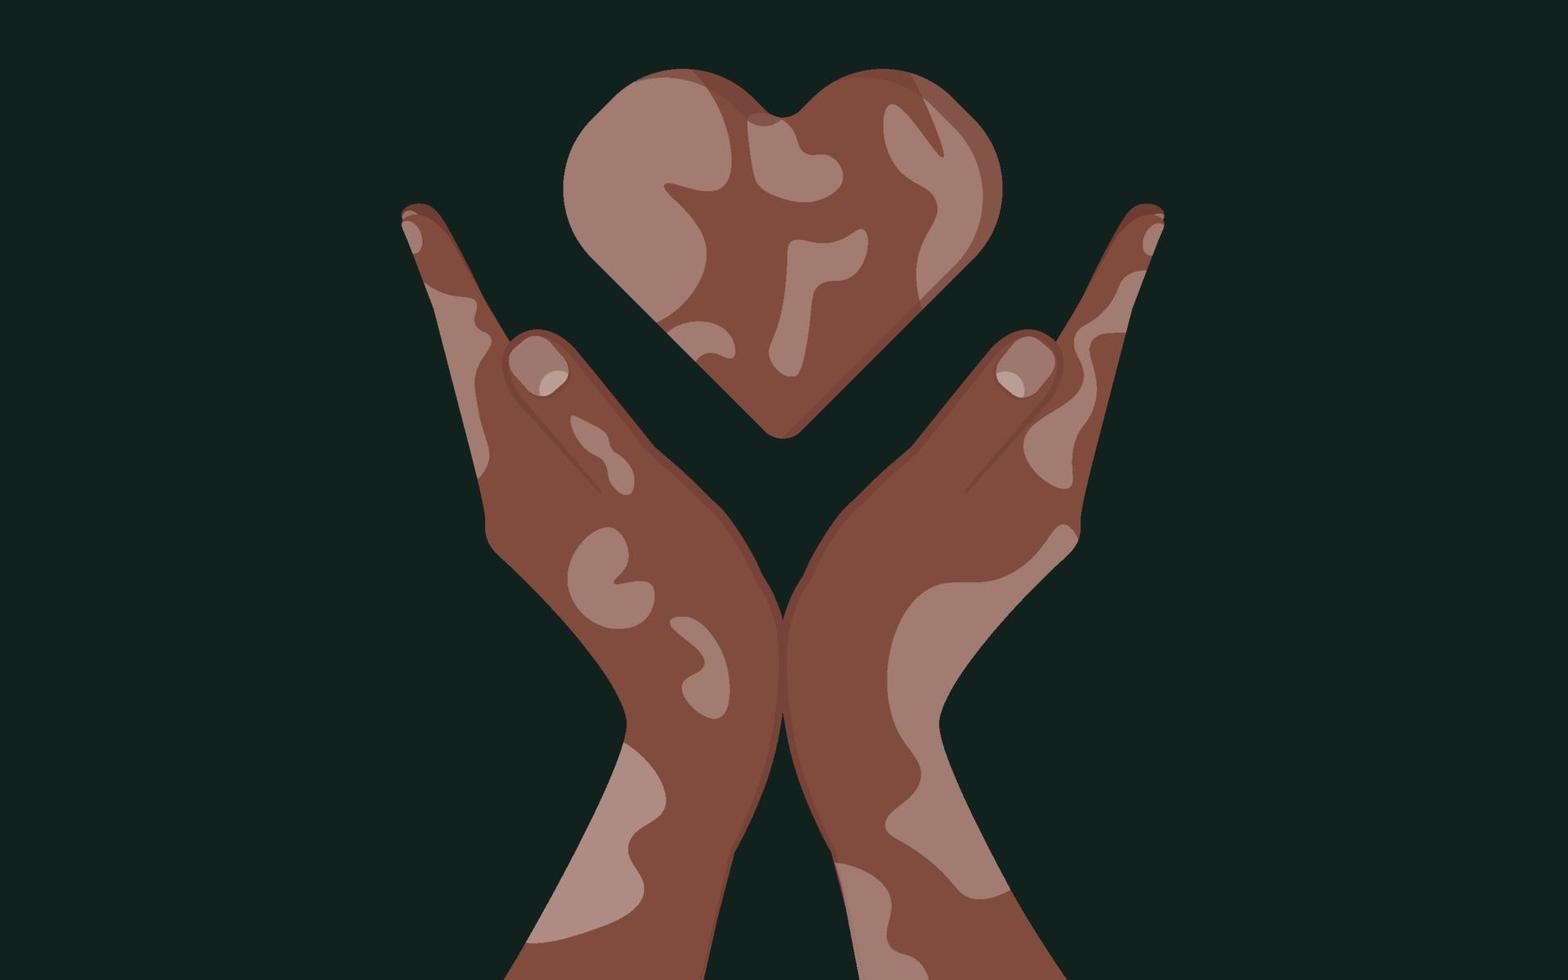 mensen met huidproblemen vitiligo. twee handen die een hartvormig gebaar maken. lichaam positief plat ontwerp van eigenliefde. depigmentatie ziekte. vector illustratie